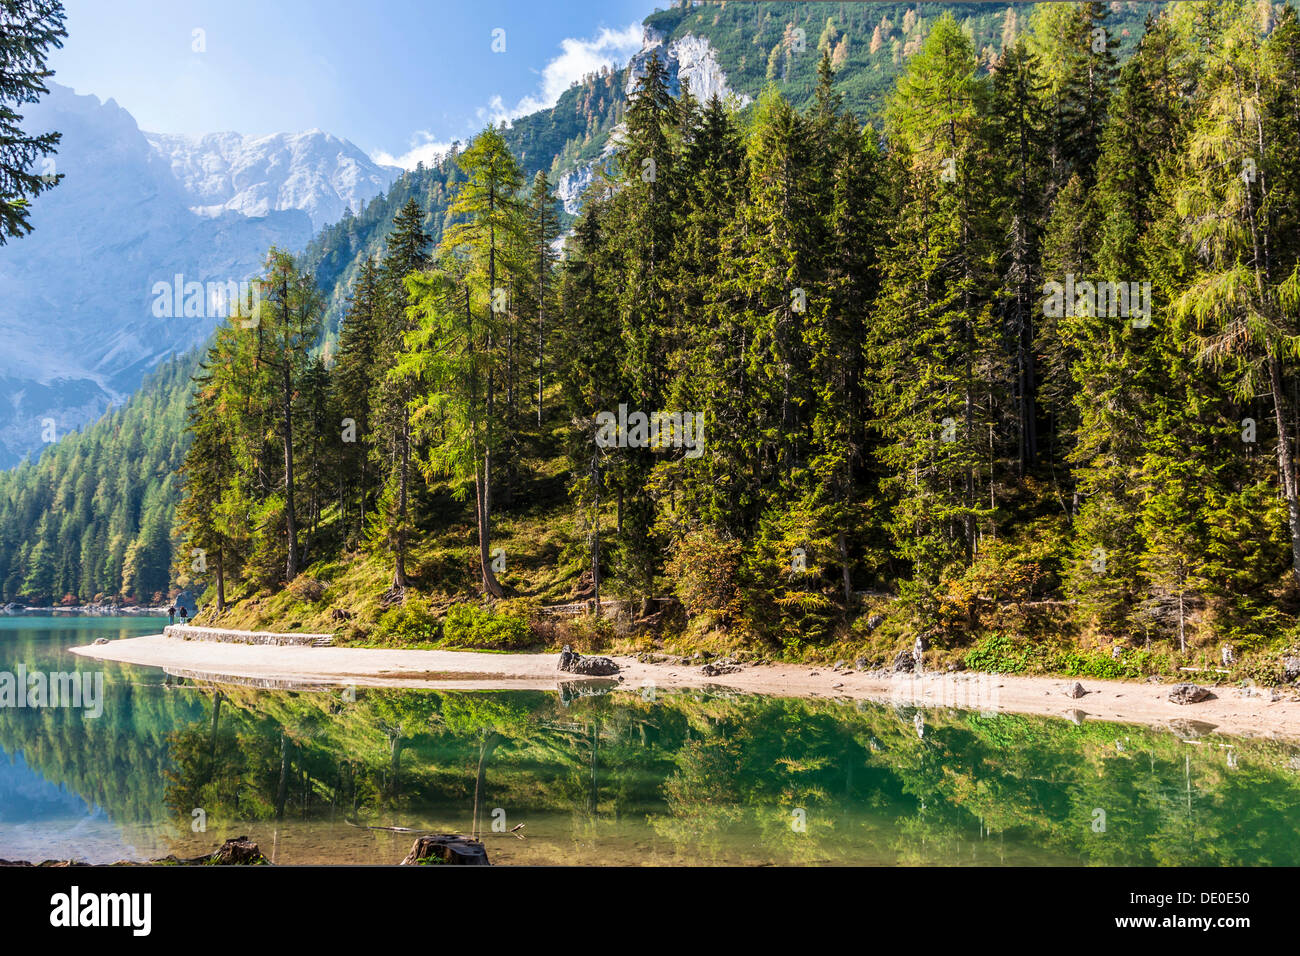 Le lac de Pragser Wildsee, lac Lago di Braies, Pragser Tal vallée, Dolomites, province de Bolzano-Bozen, Italie, Europe Banque D'Images